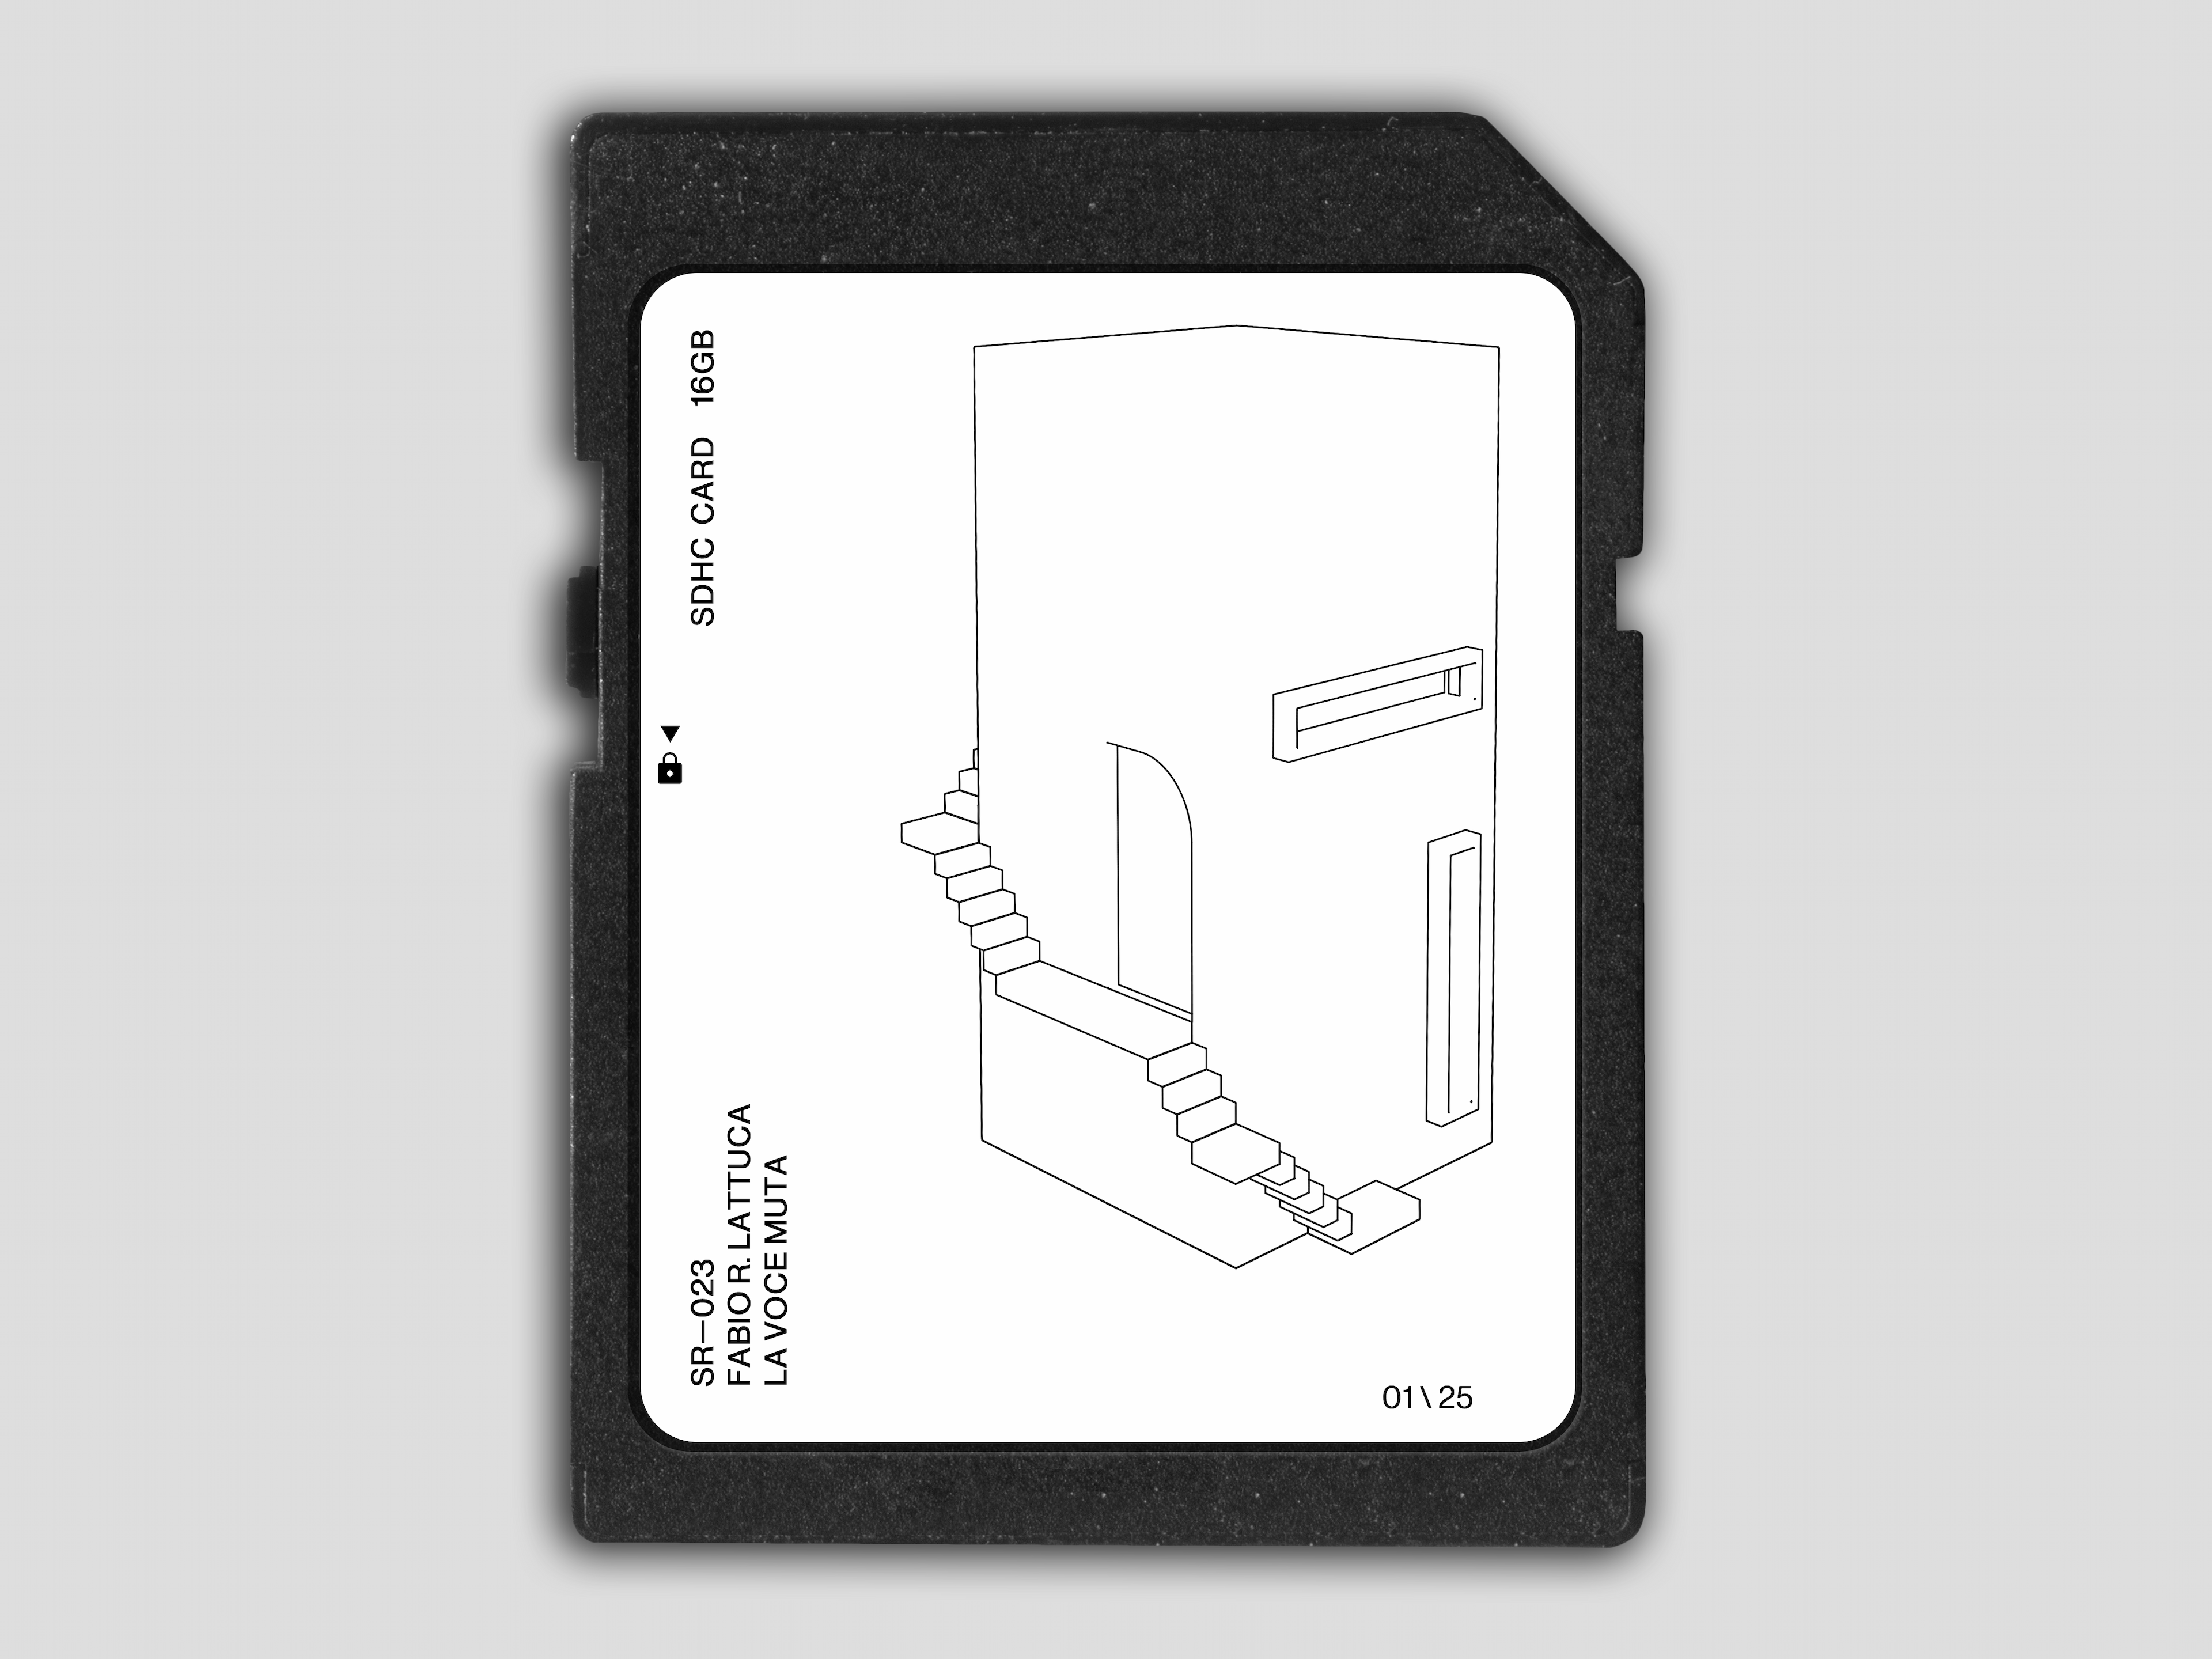 SD card merchandise for album release SR 023 La voce muta by Fabio R. Lattuca